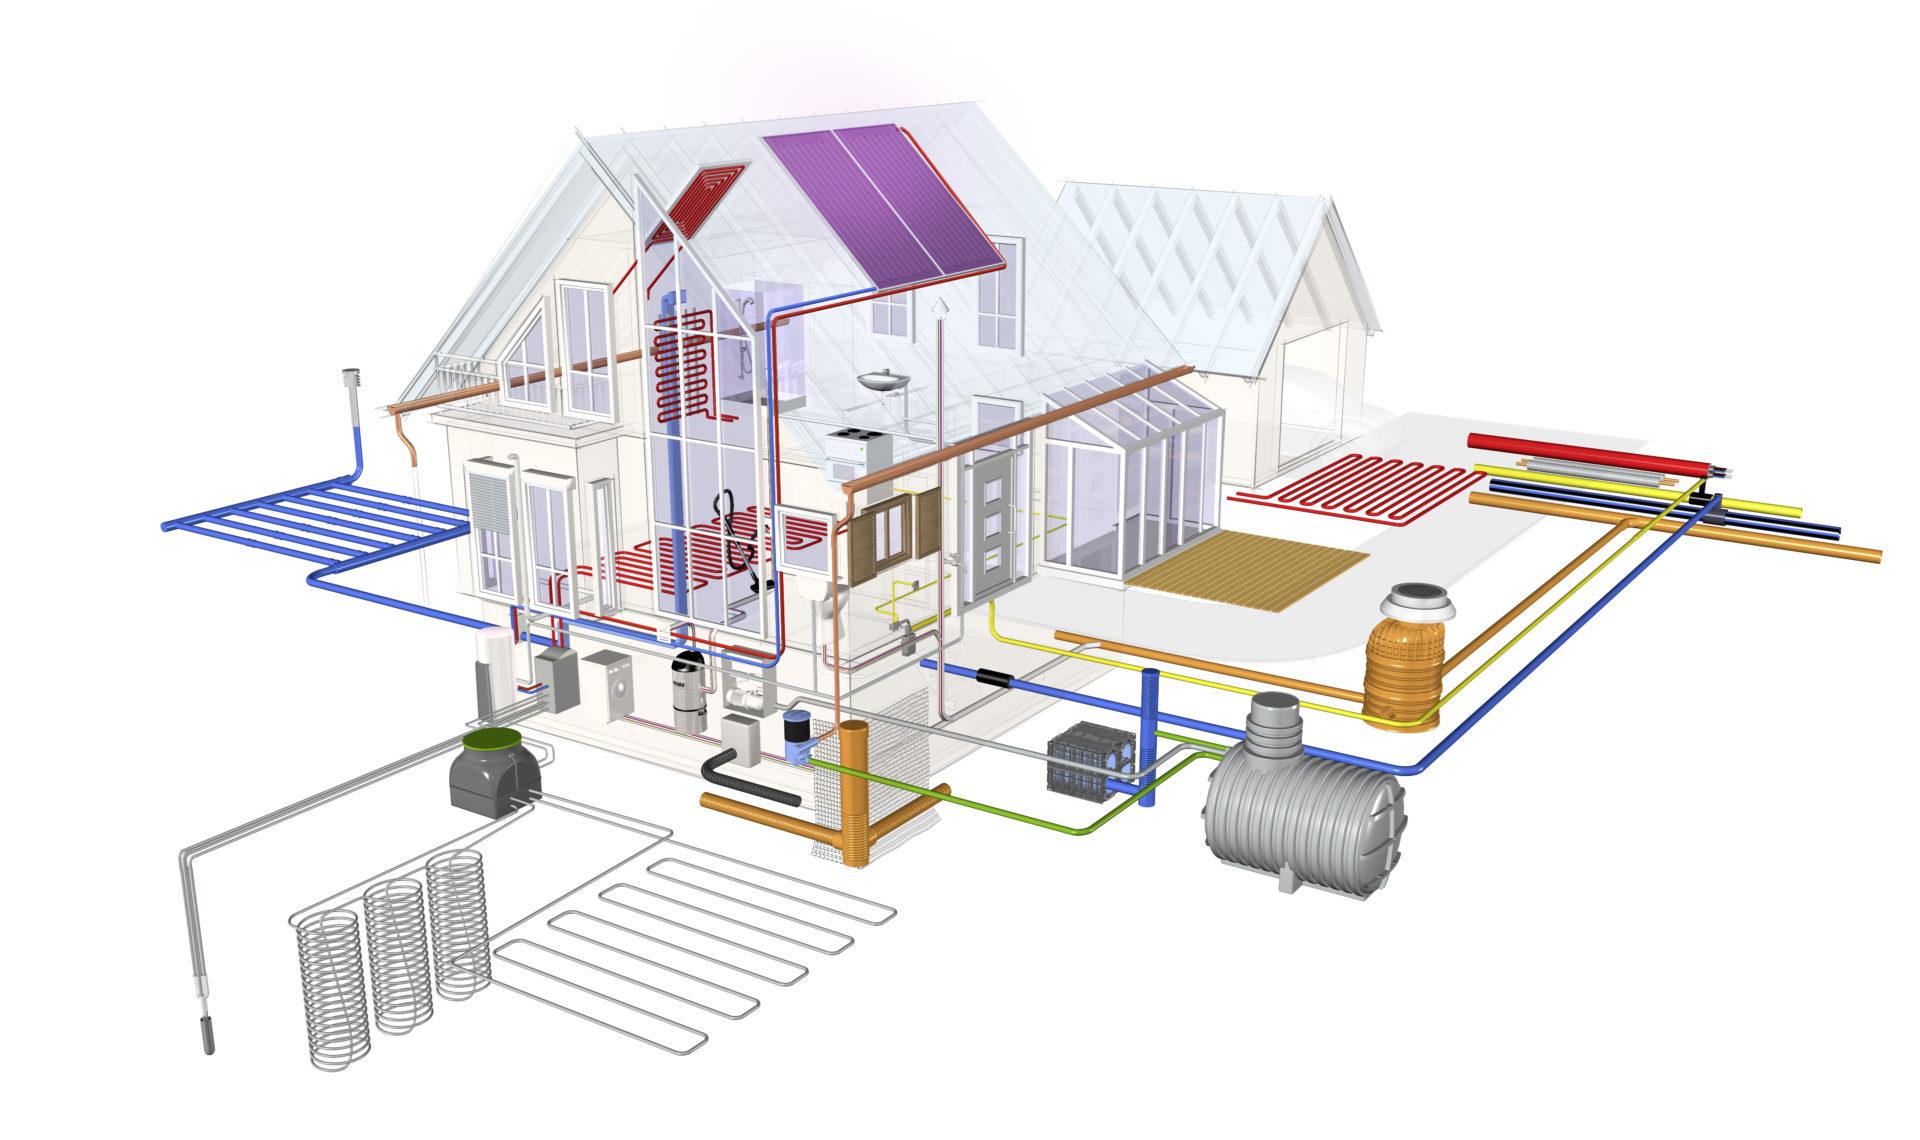 Отопление вода спб. Проектирование отопления и вентиляции. Отопление и водоснабжение. Проектировка системы отопления. Инженерные коммуникации в доме.